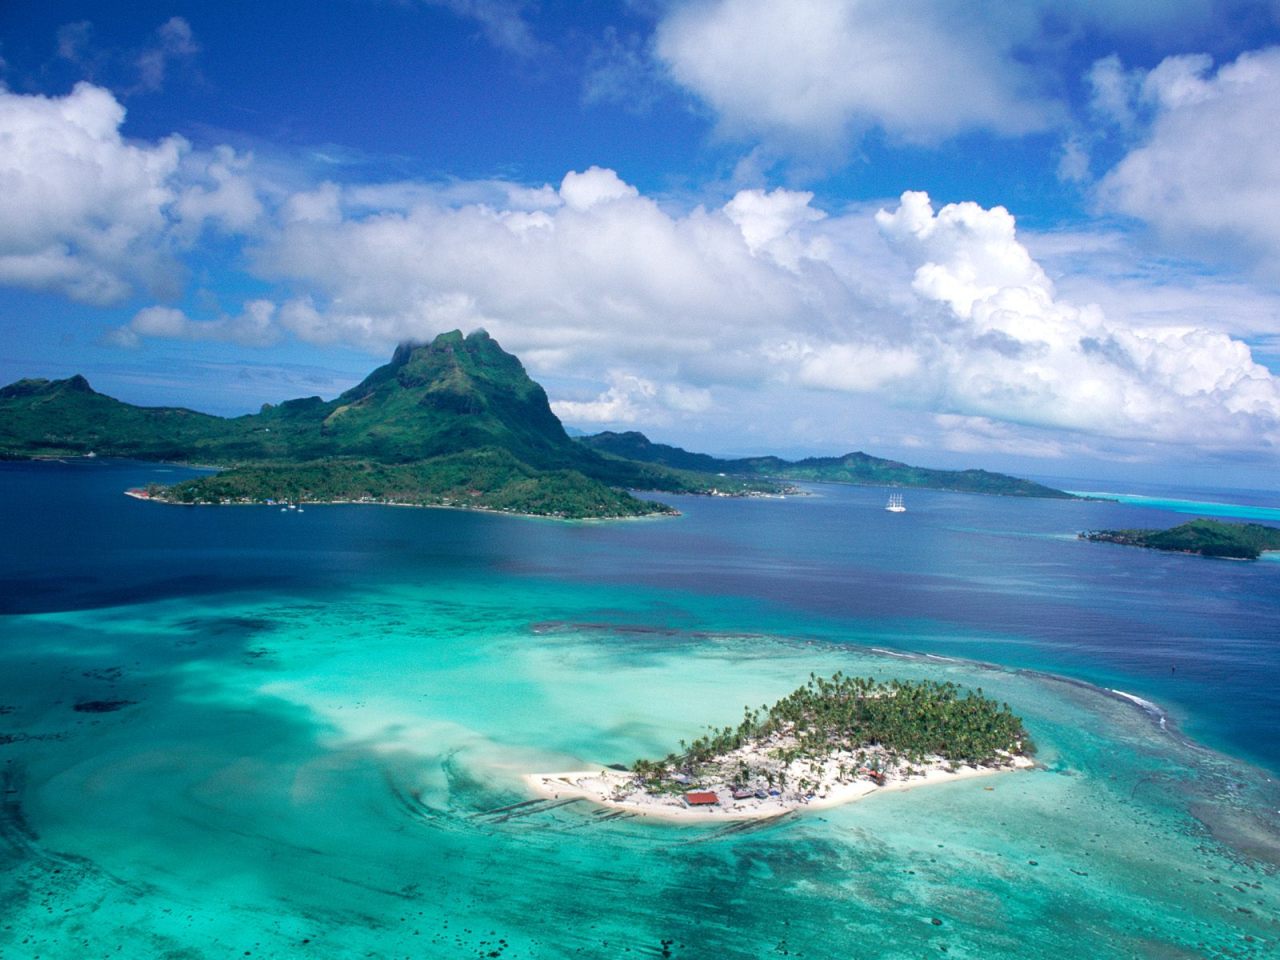 Tropical island paradise yacht